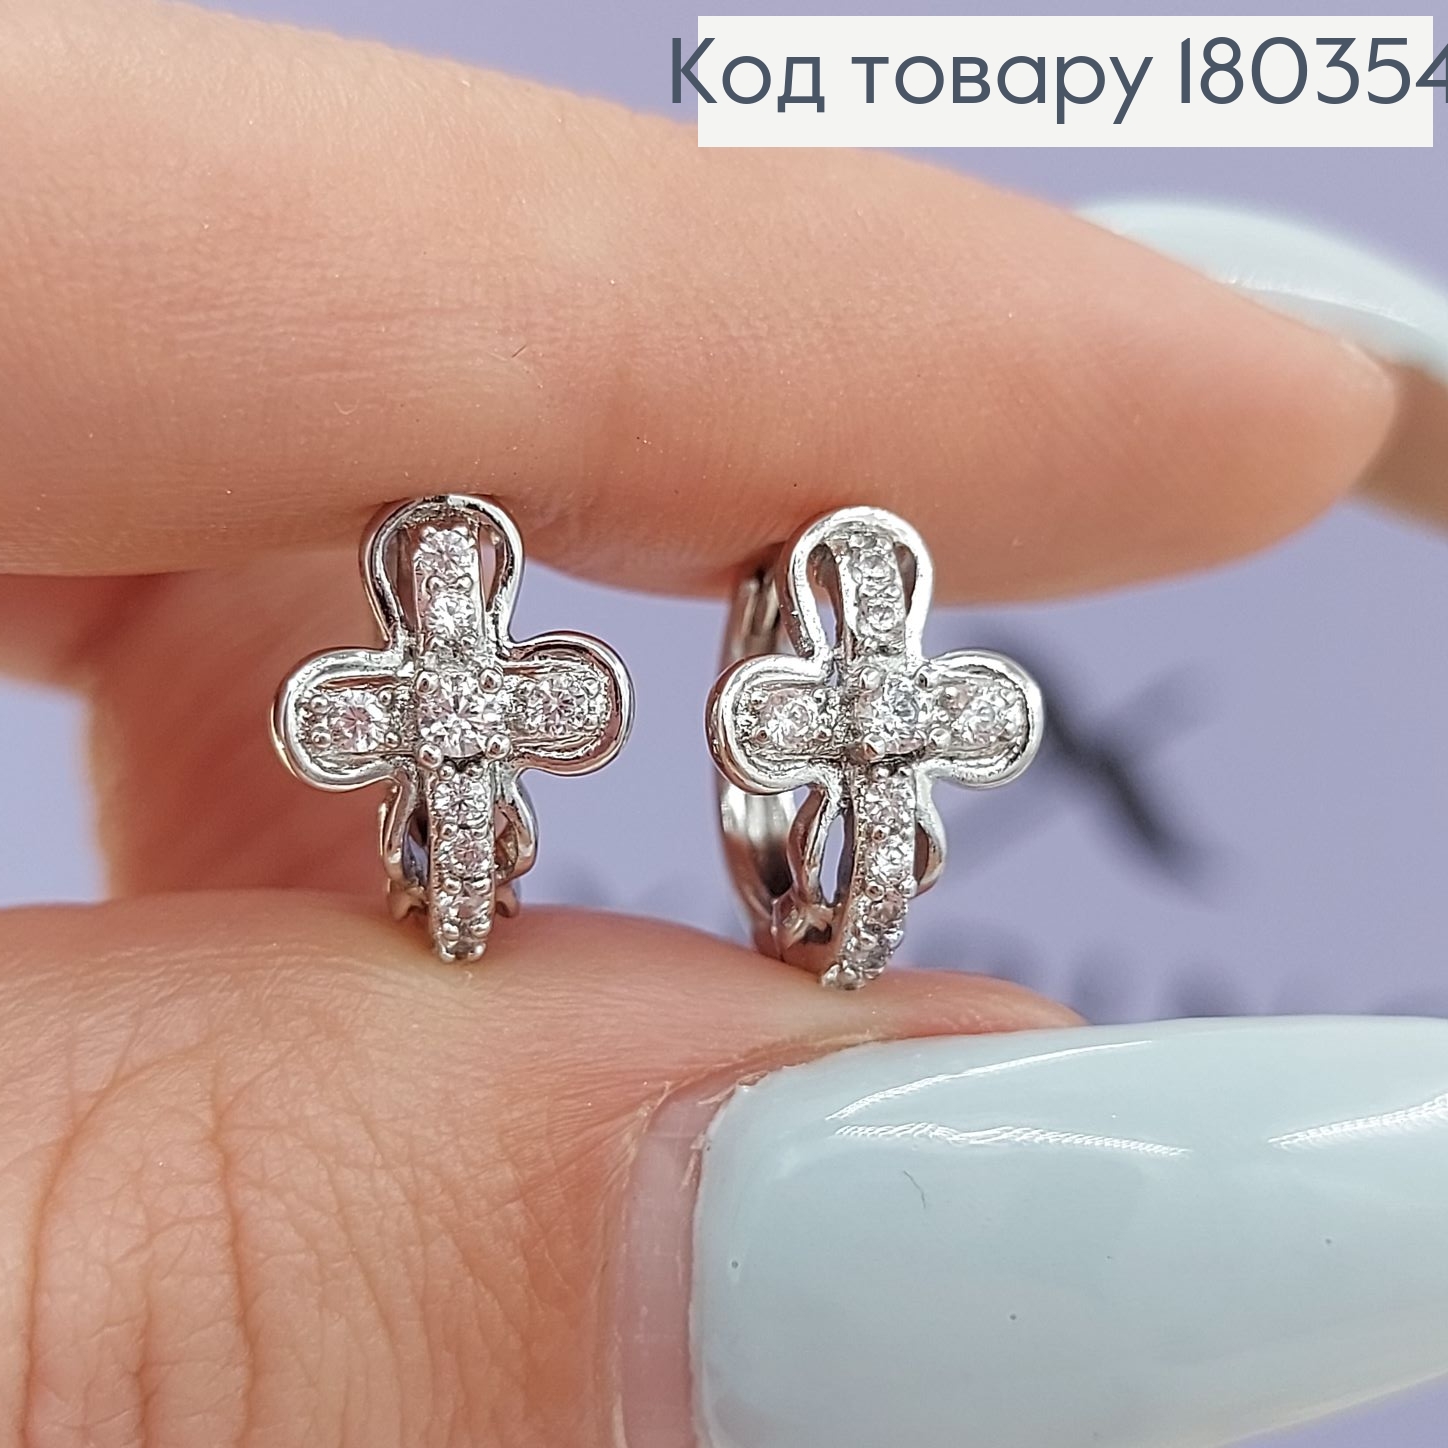  Серьги кольца крестики с камнями родированным   Xuping 180354 фото 3